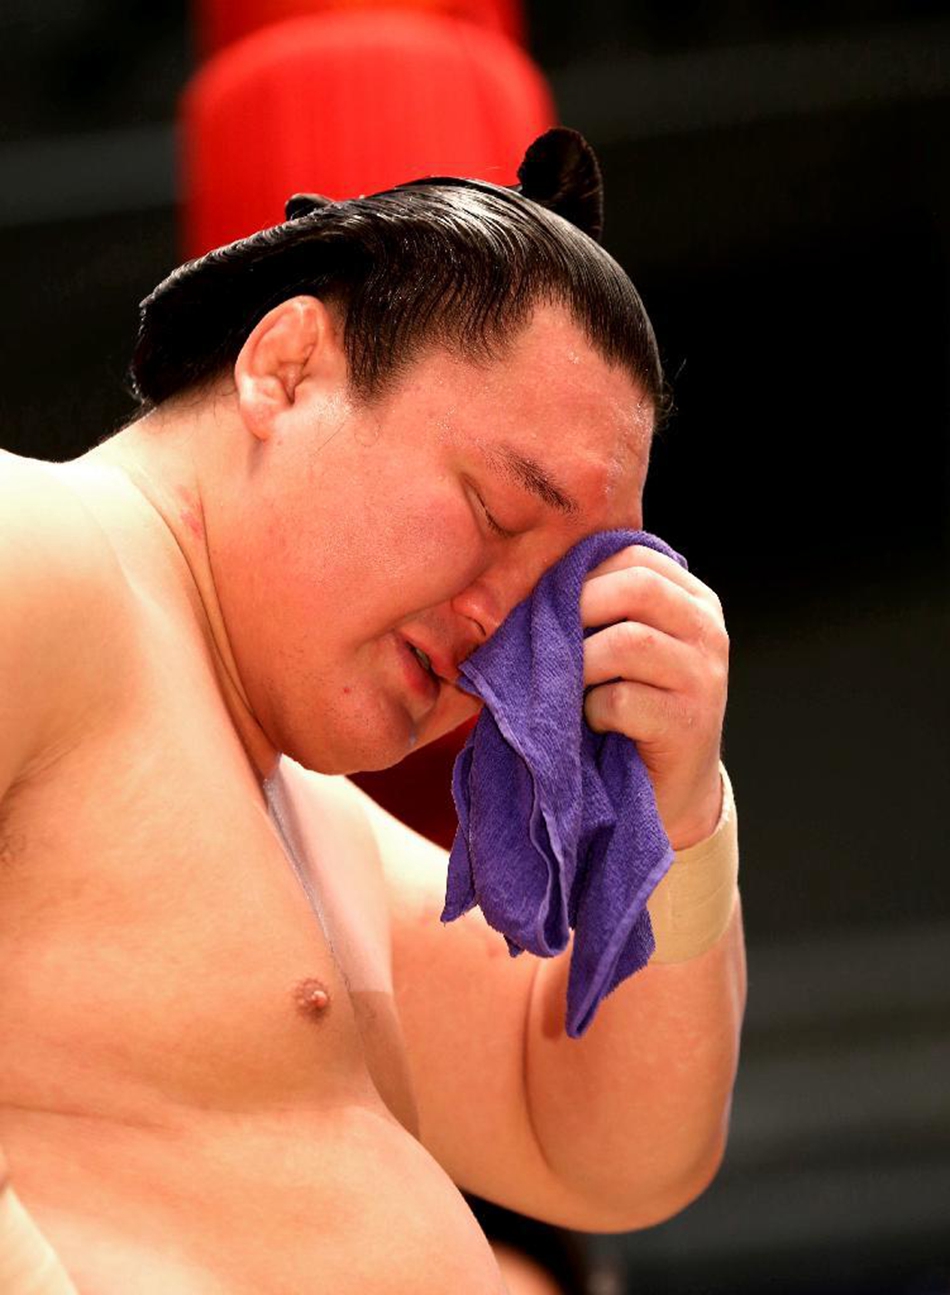 日本大相扑横纲白鹏第36次夺冠 刷记录